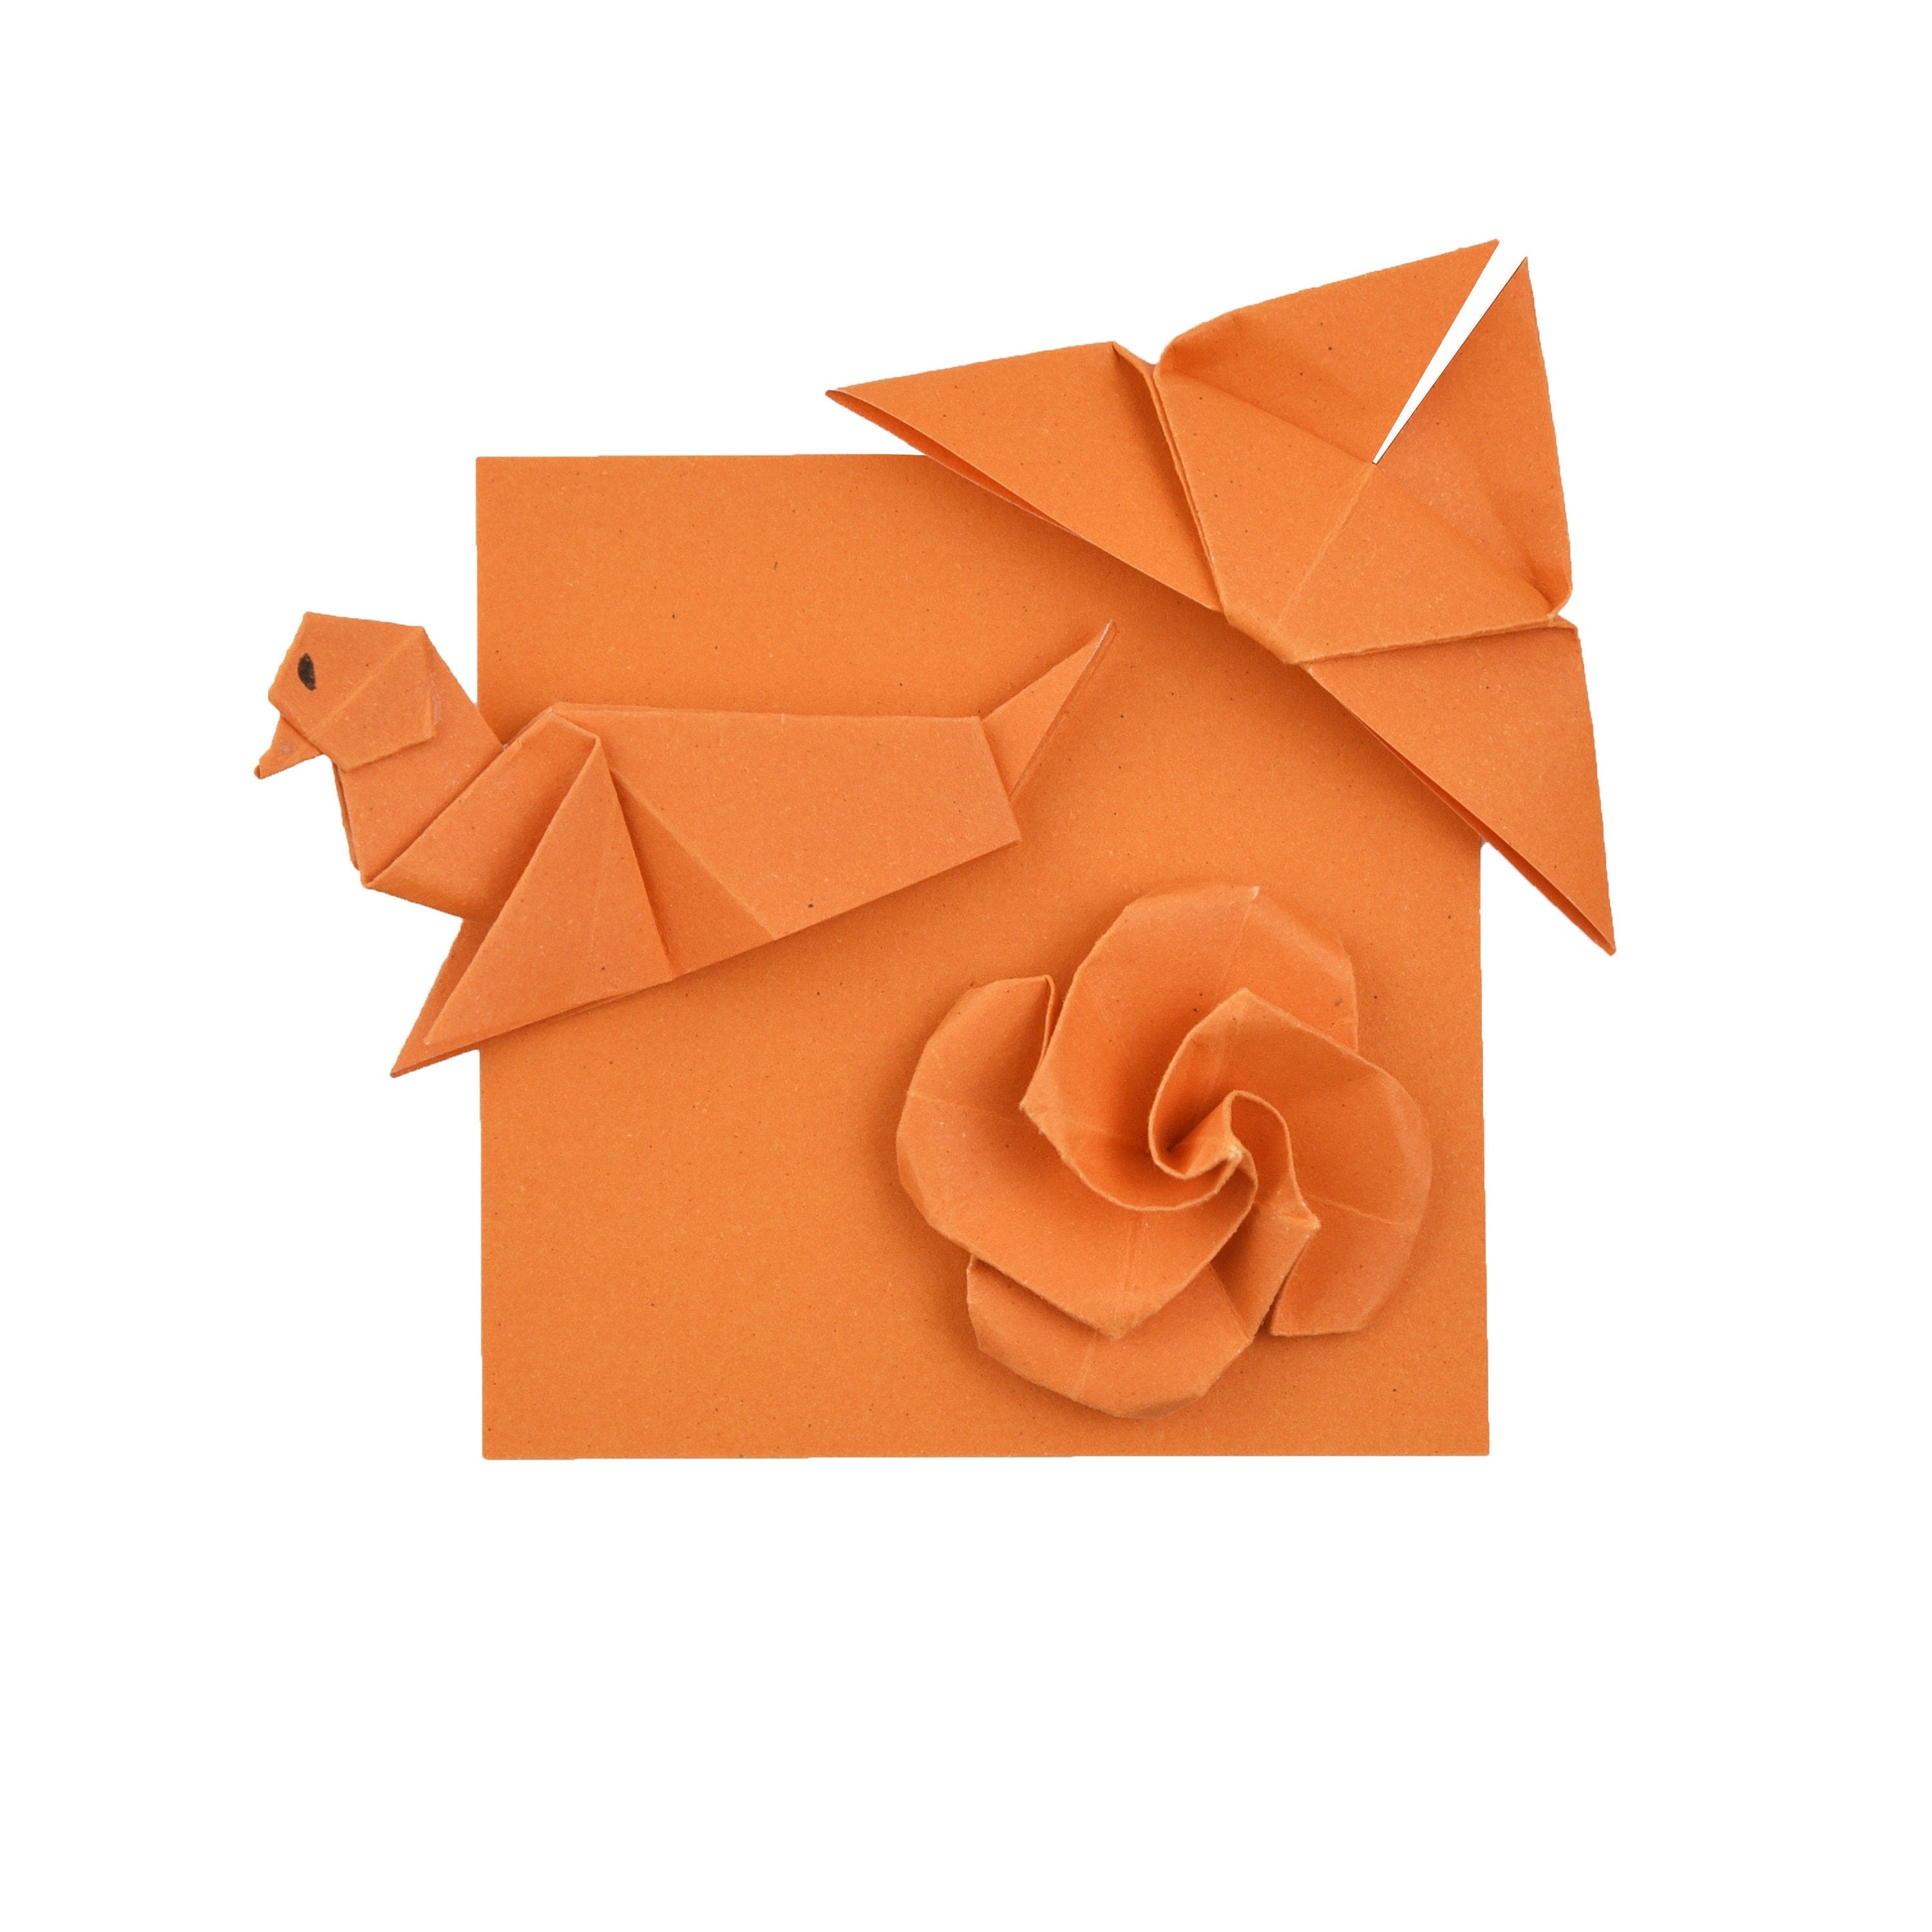 100 fogli di carta origami - 3x3 pollici - Confezione di carta quadrata per piegare, gru origami e decorazioni - S14